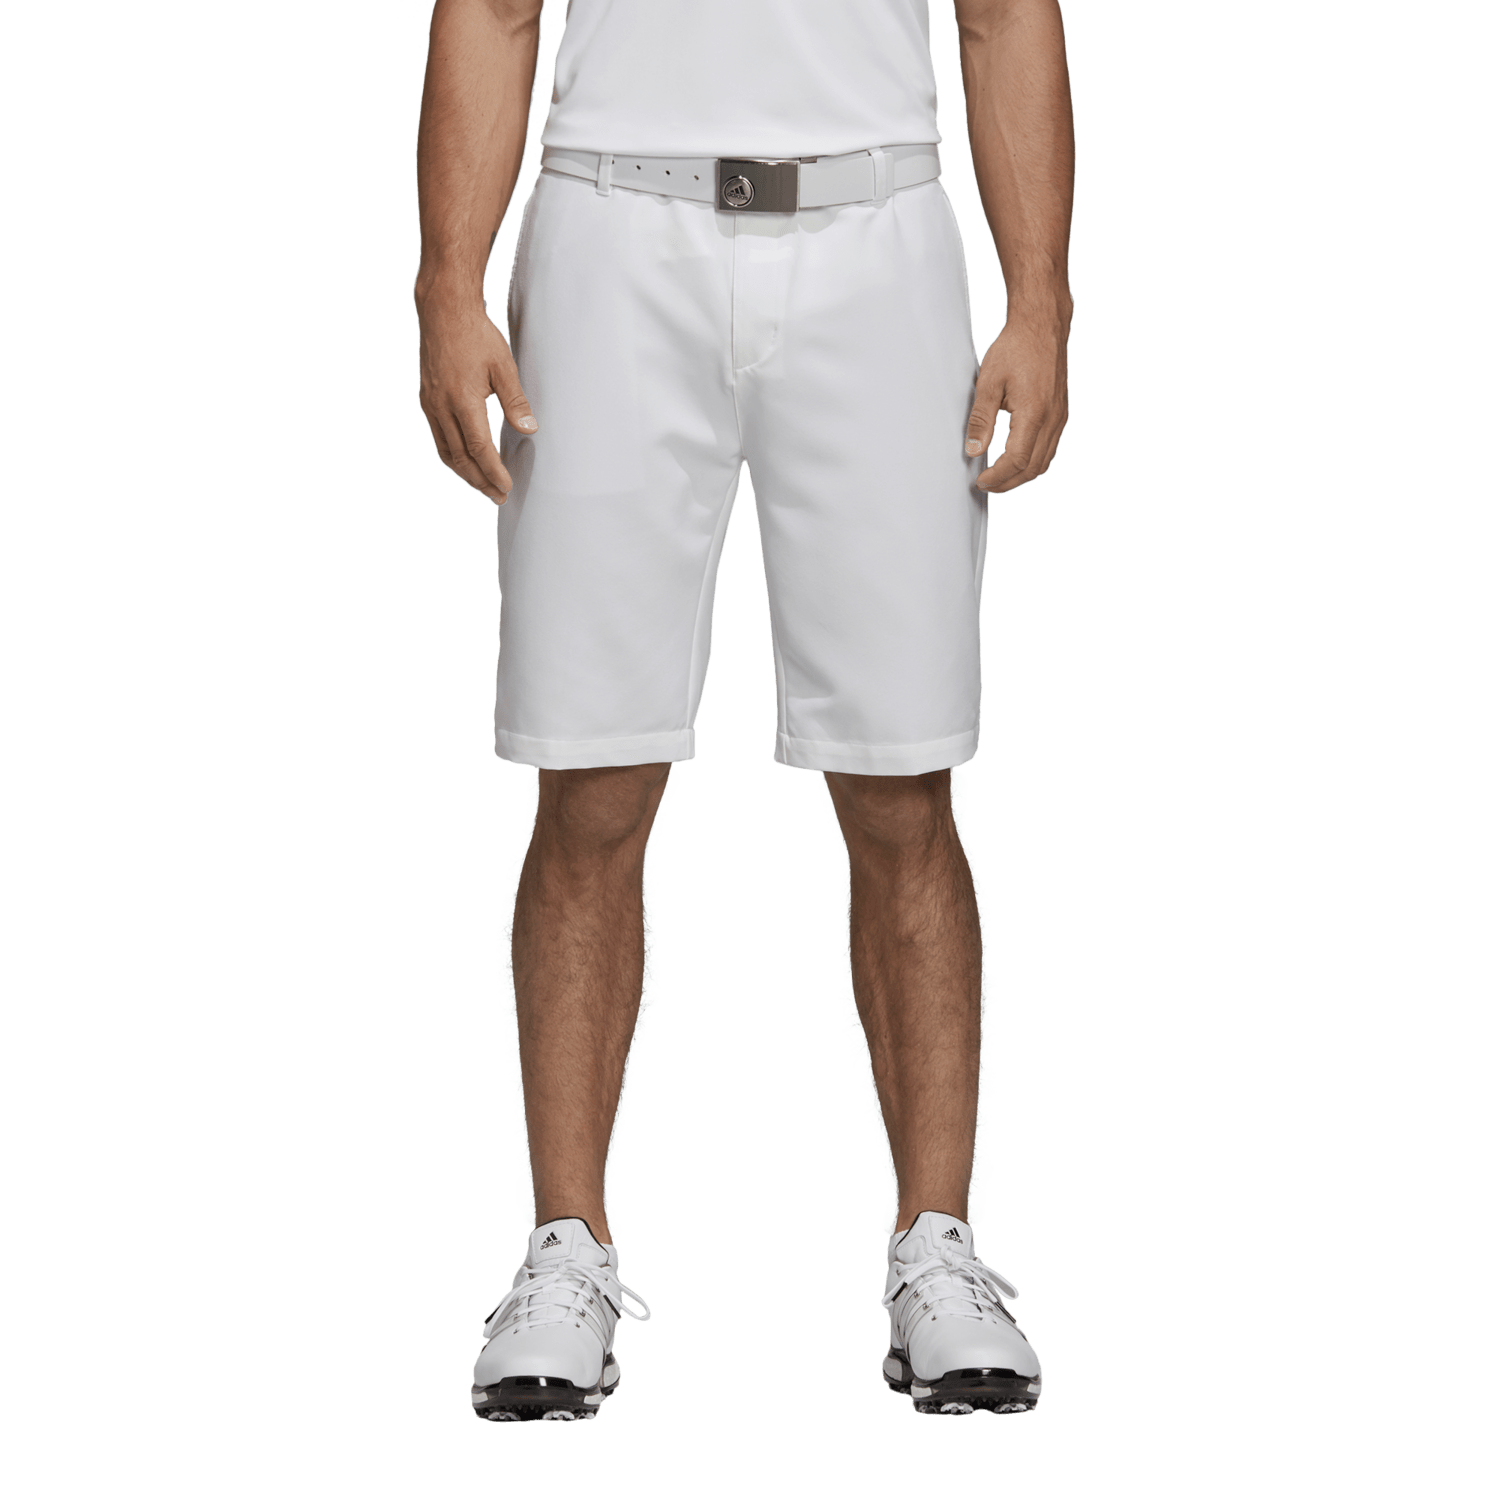 adidas stretch golf shorts